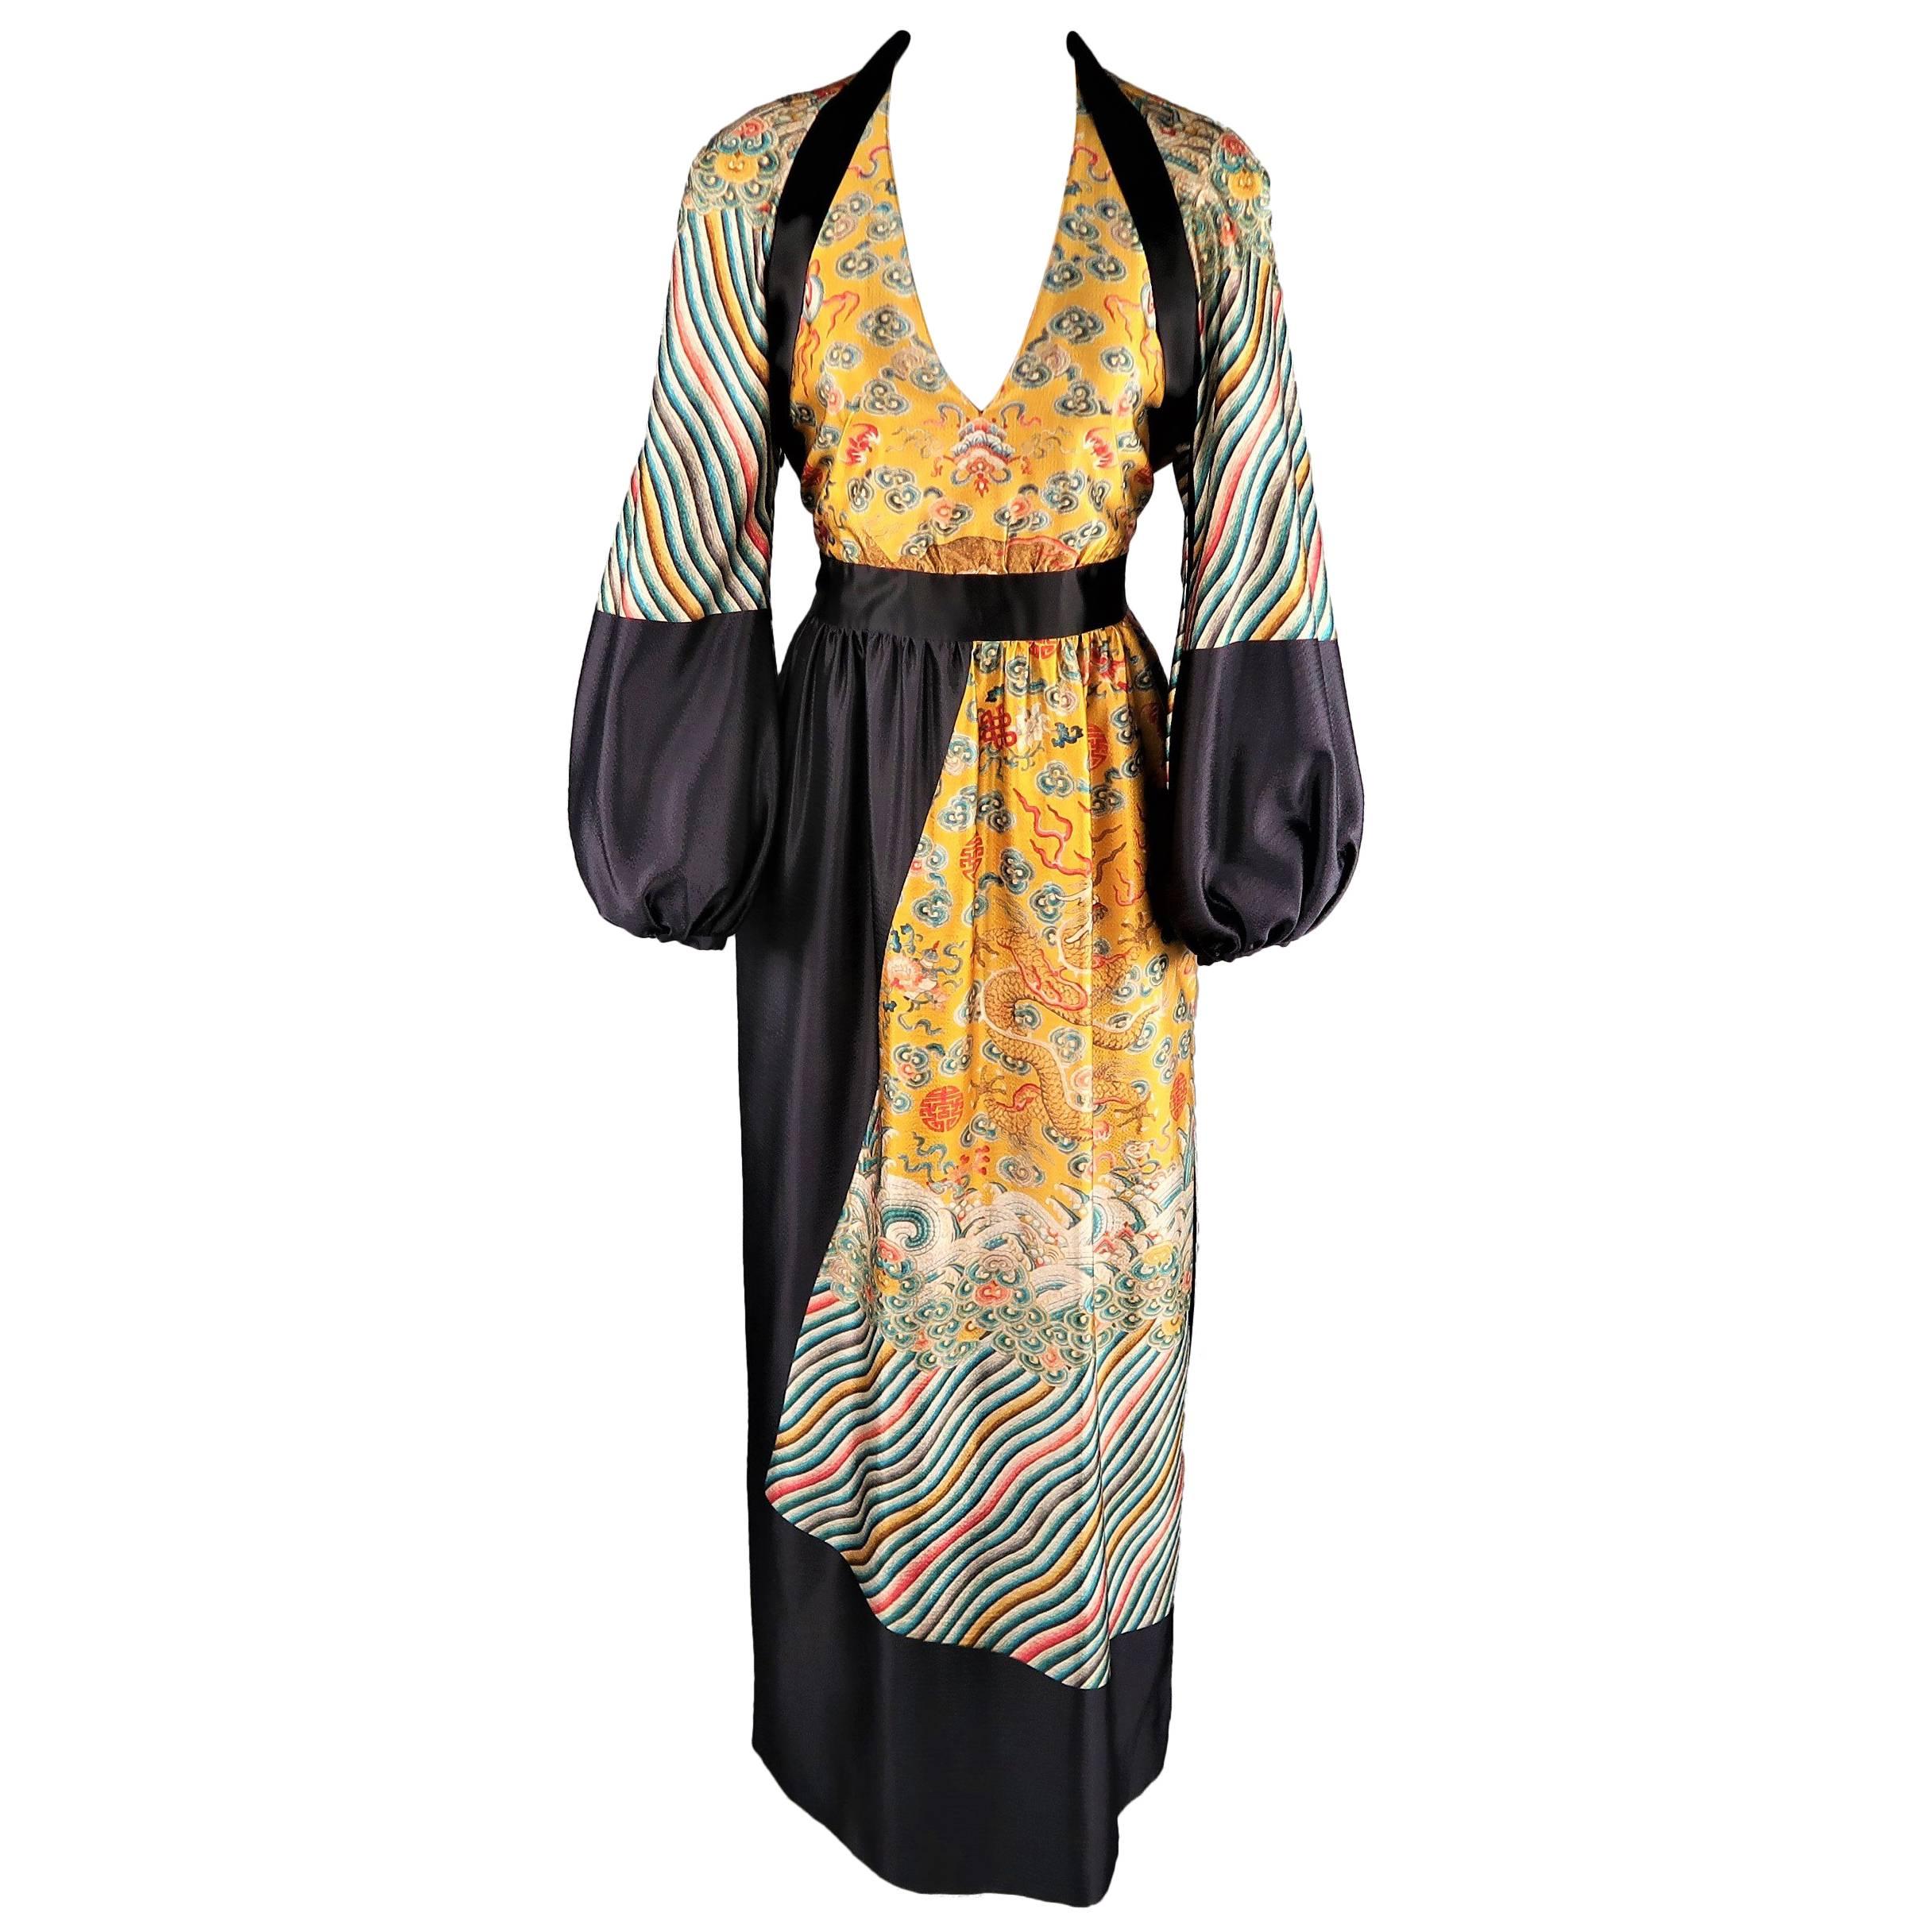 DRIES VAN NOTEN Dress -  Size 6 Gold & Black Wool / Silk Dragon Print Maxi